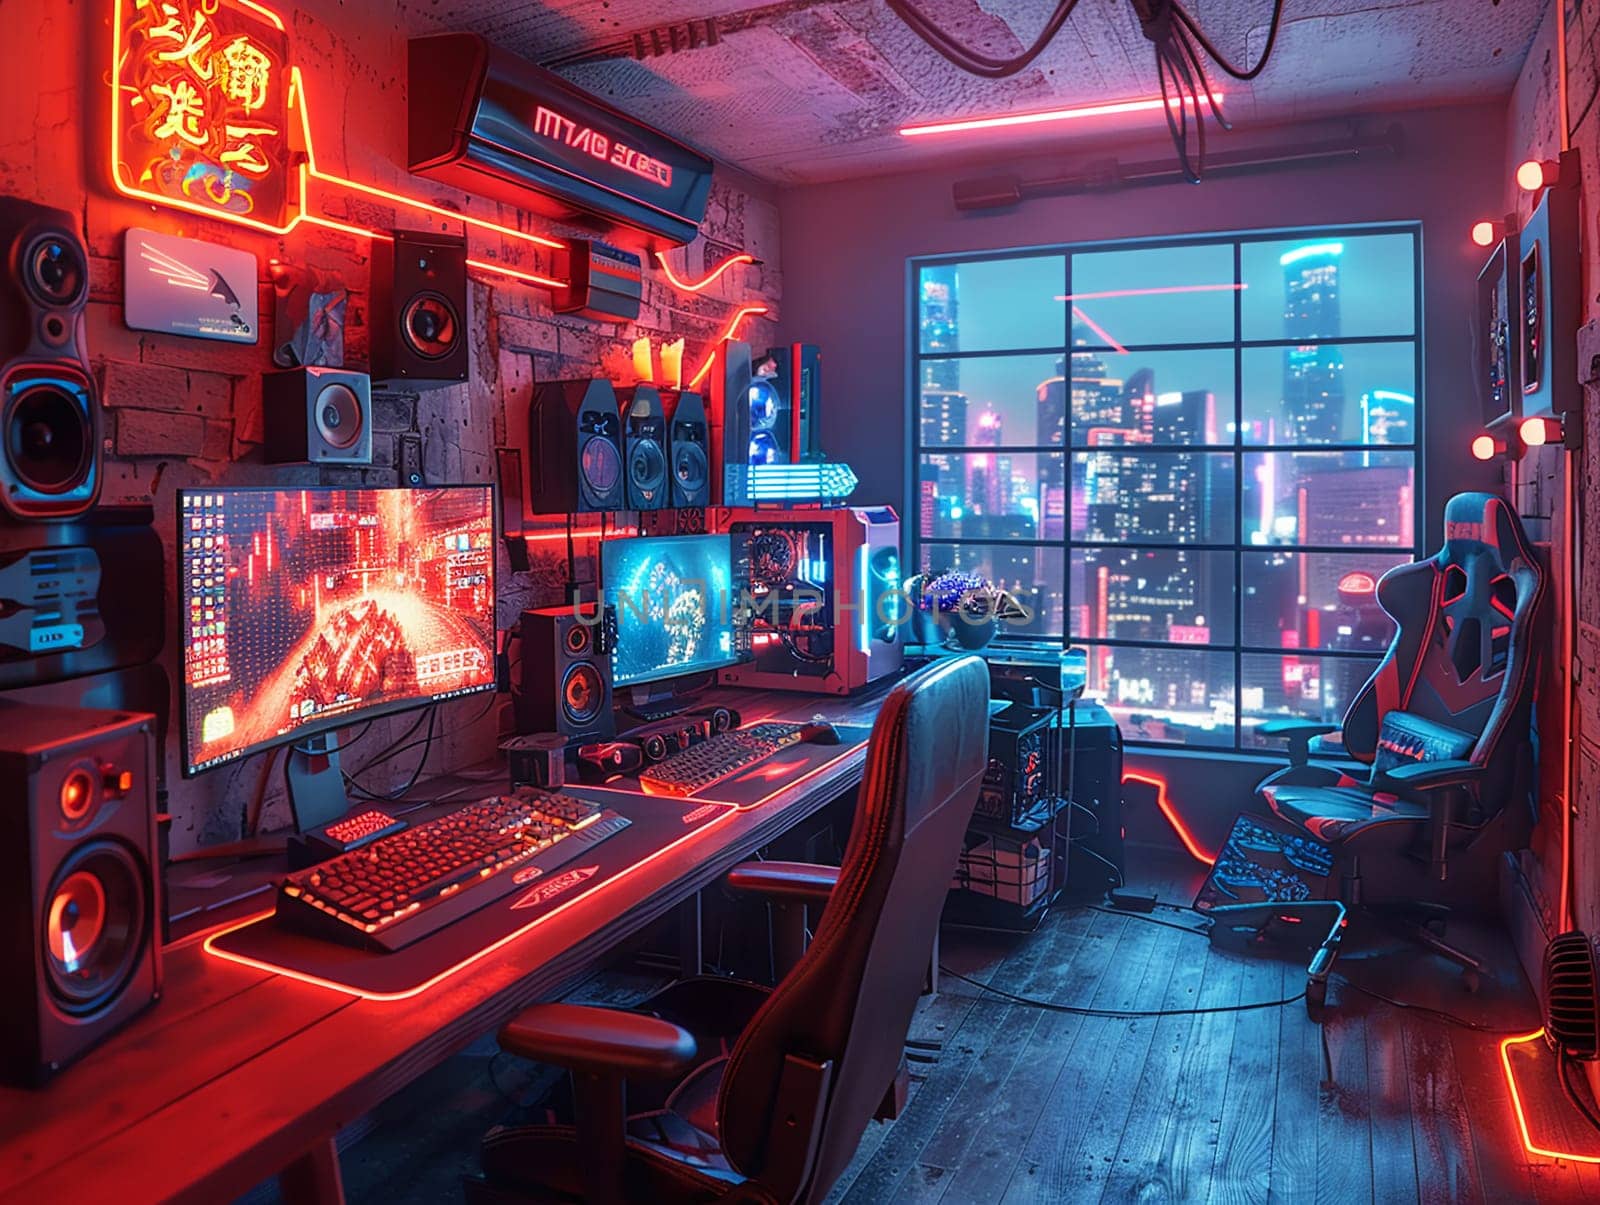 Cyberpunk gaming den with neon lights and high-tech setups